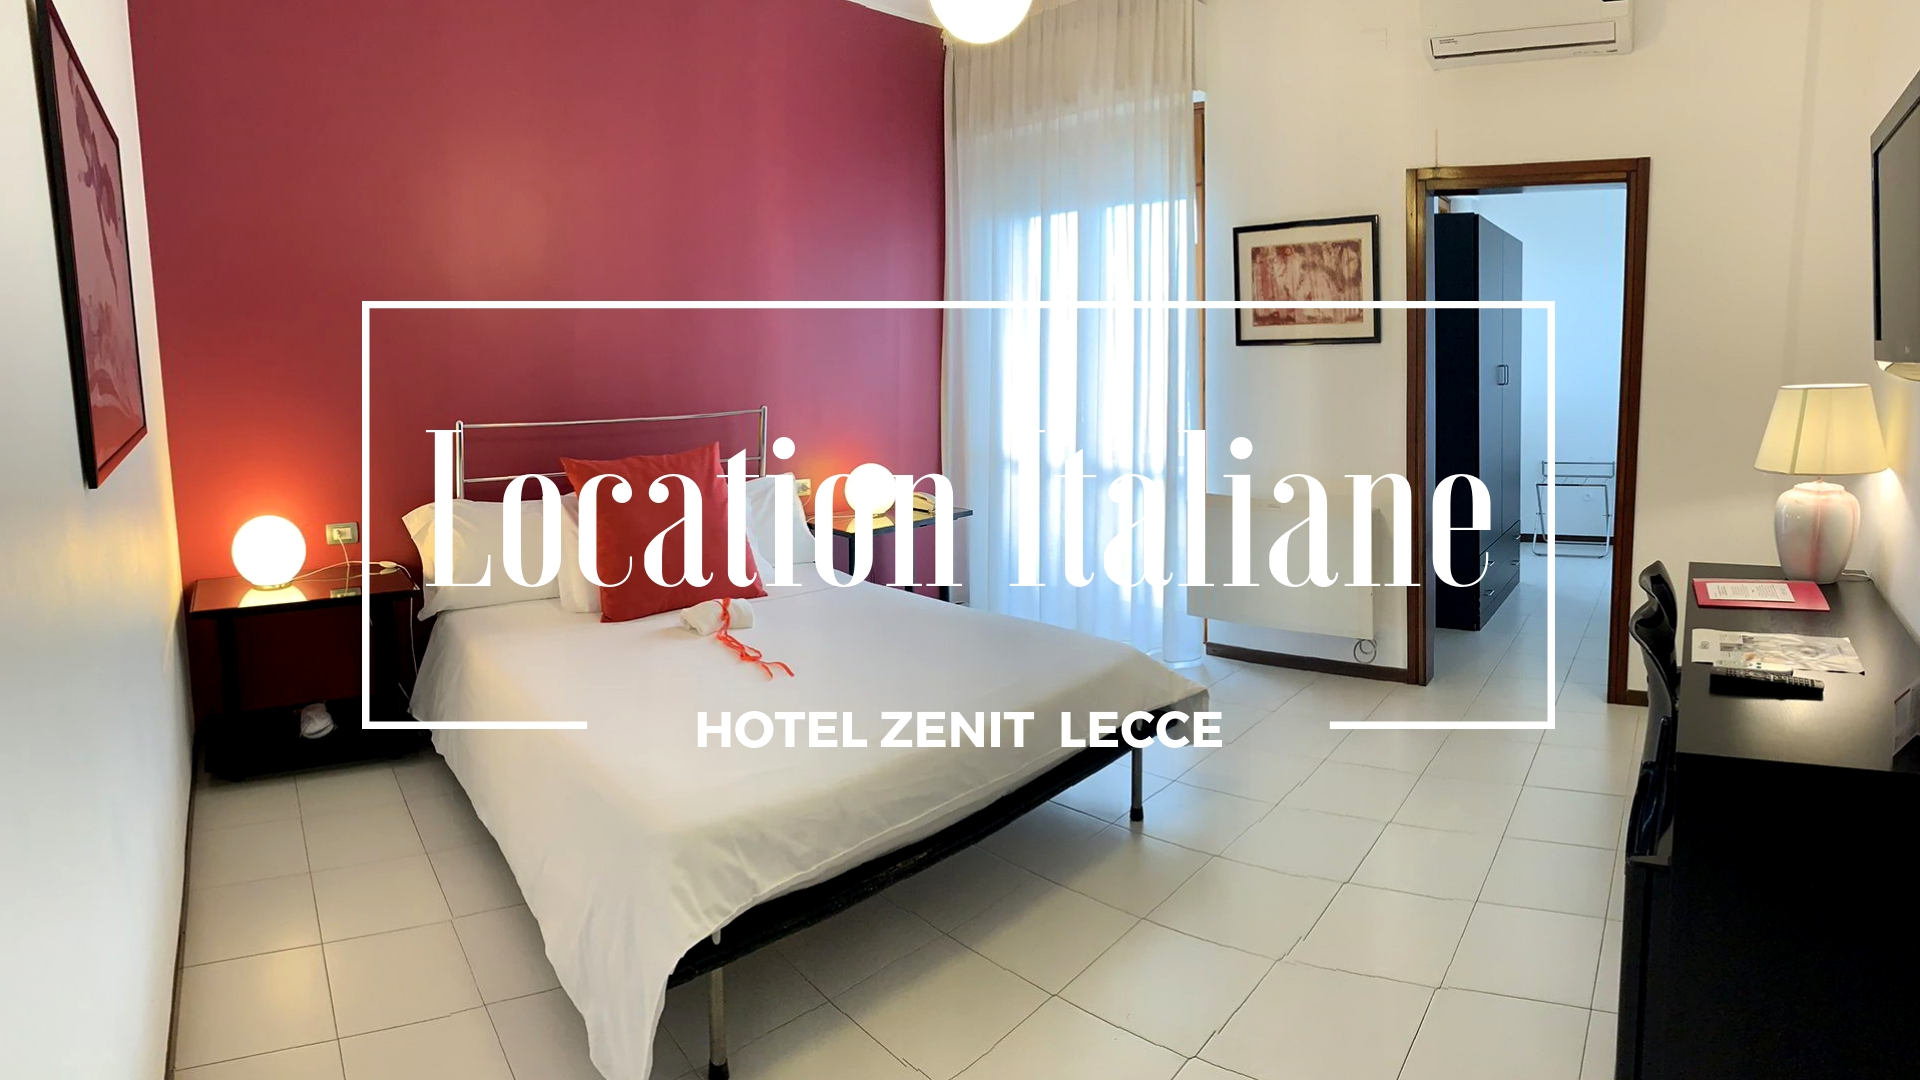 Hotel Zenit Lecce